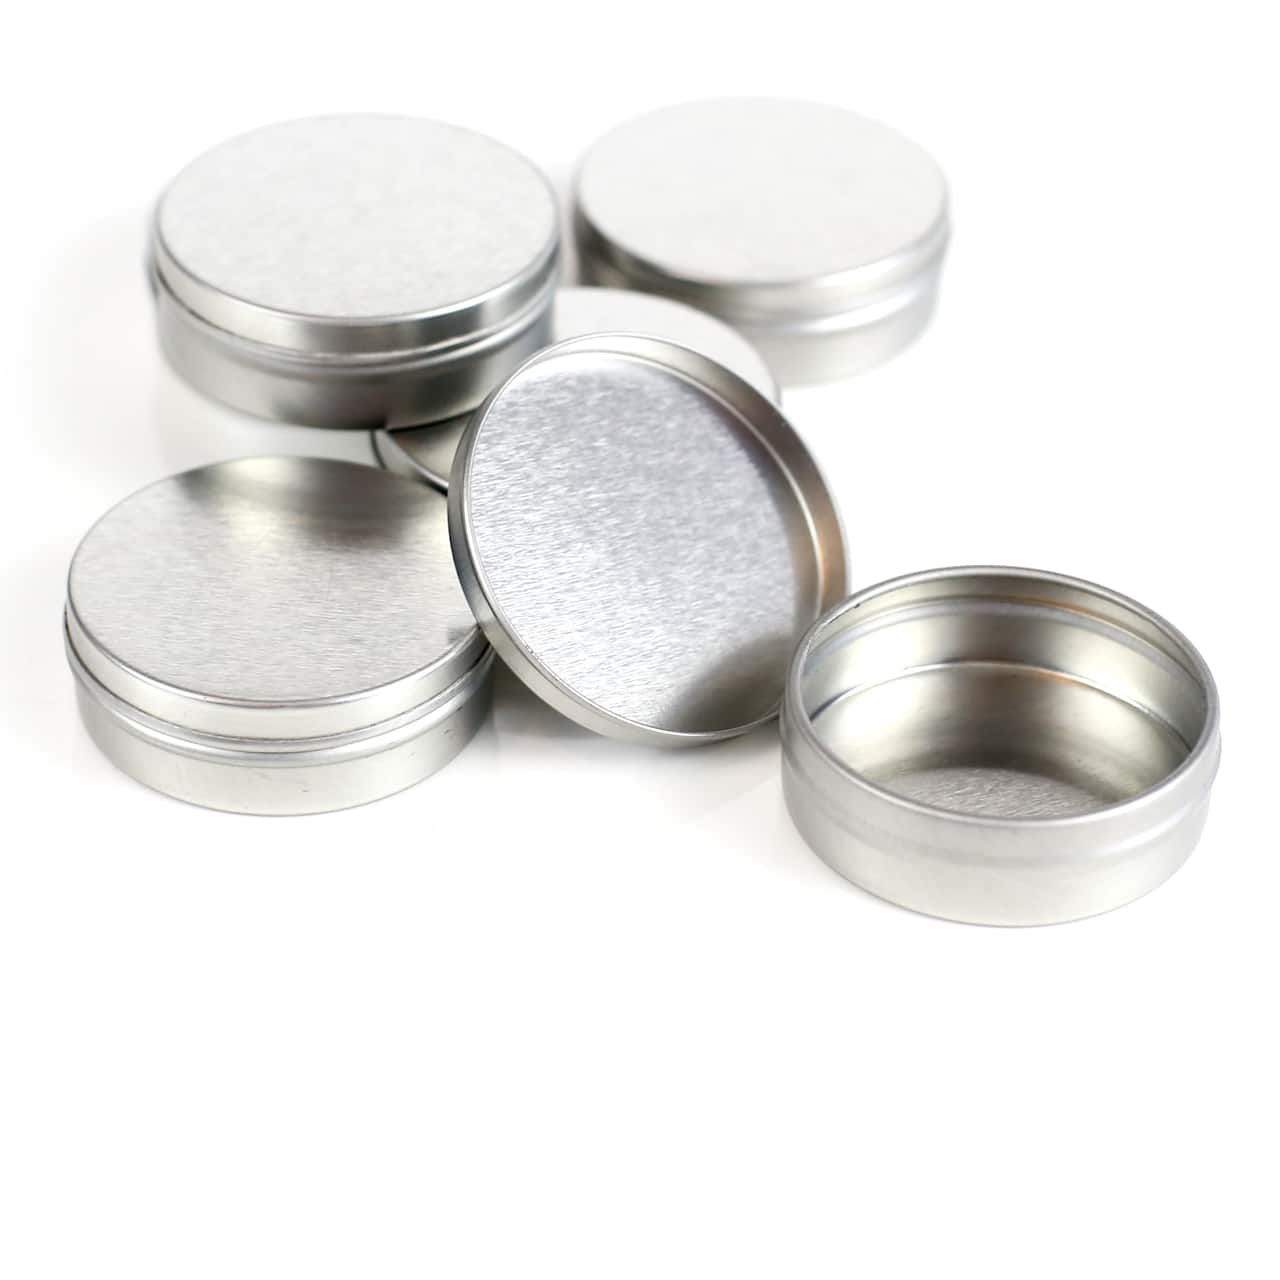 Lip Balm Tins, 6ct. by Make Market®